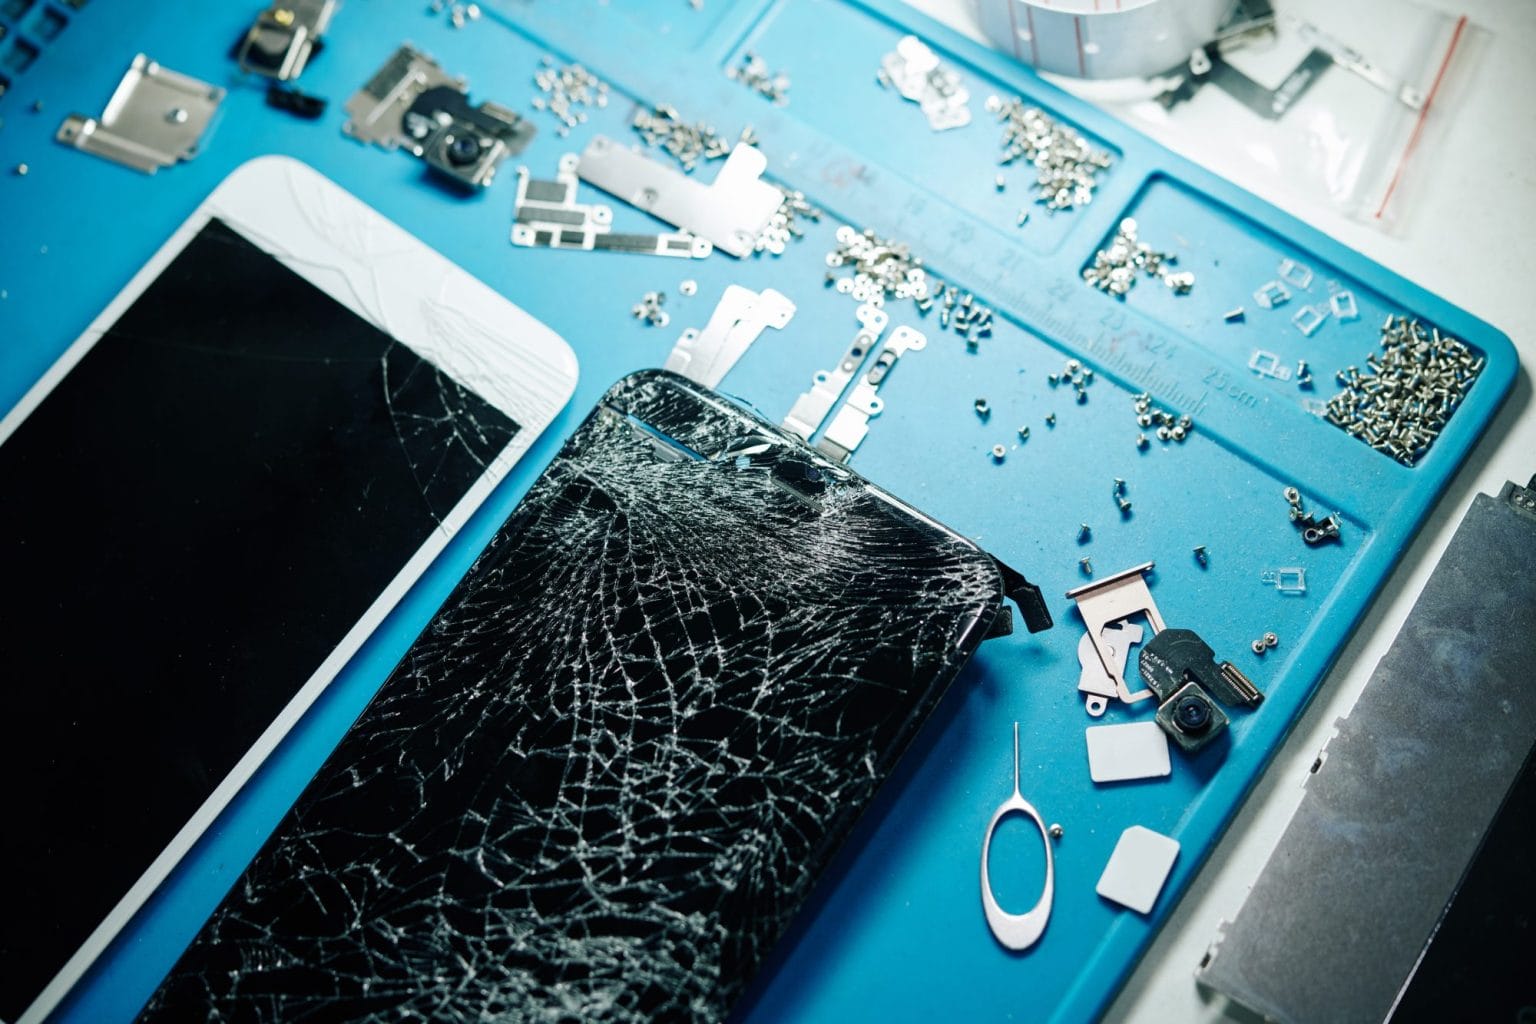 Broken smartphones and small screws